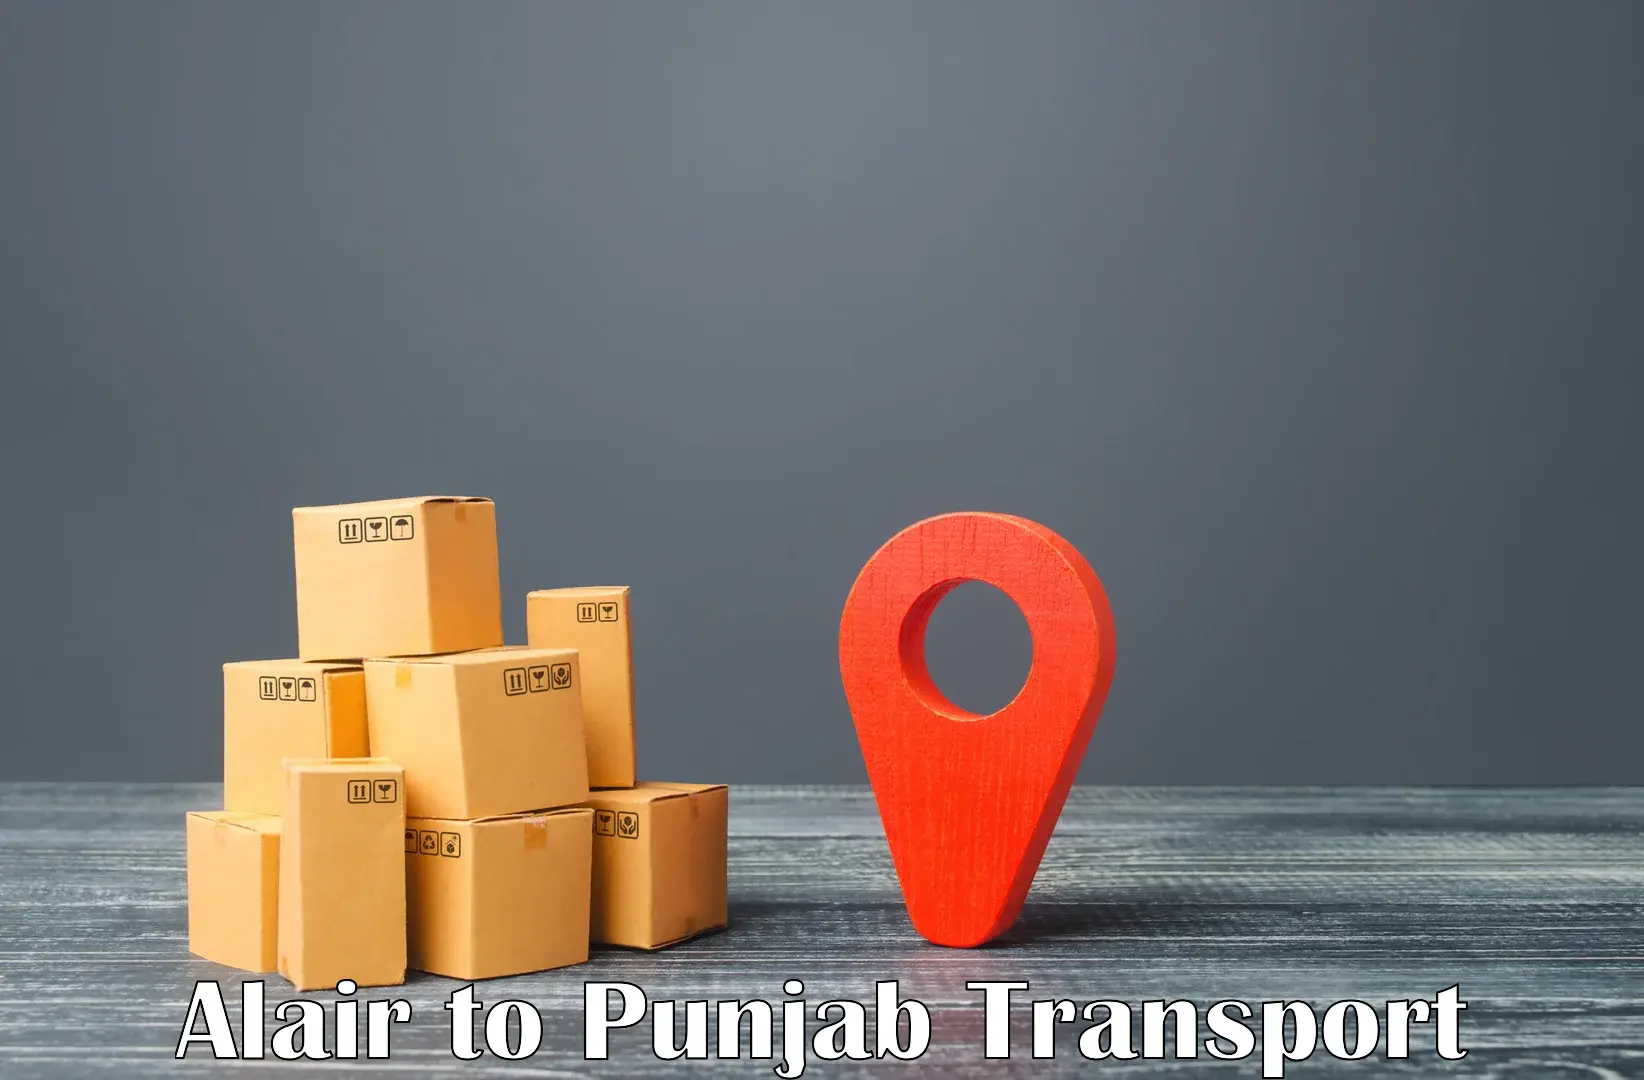 Nearest transport service Alair to Sunam